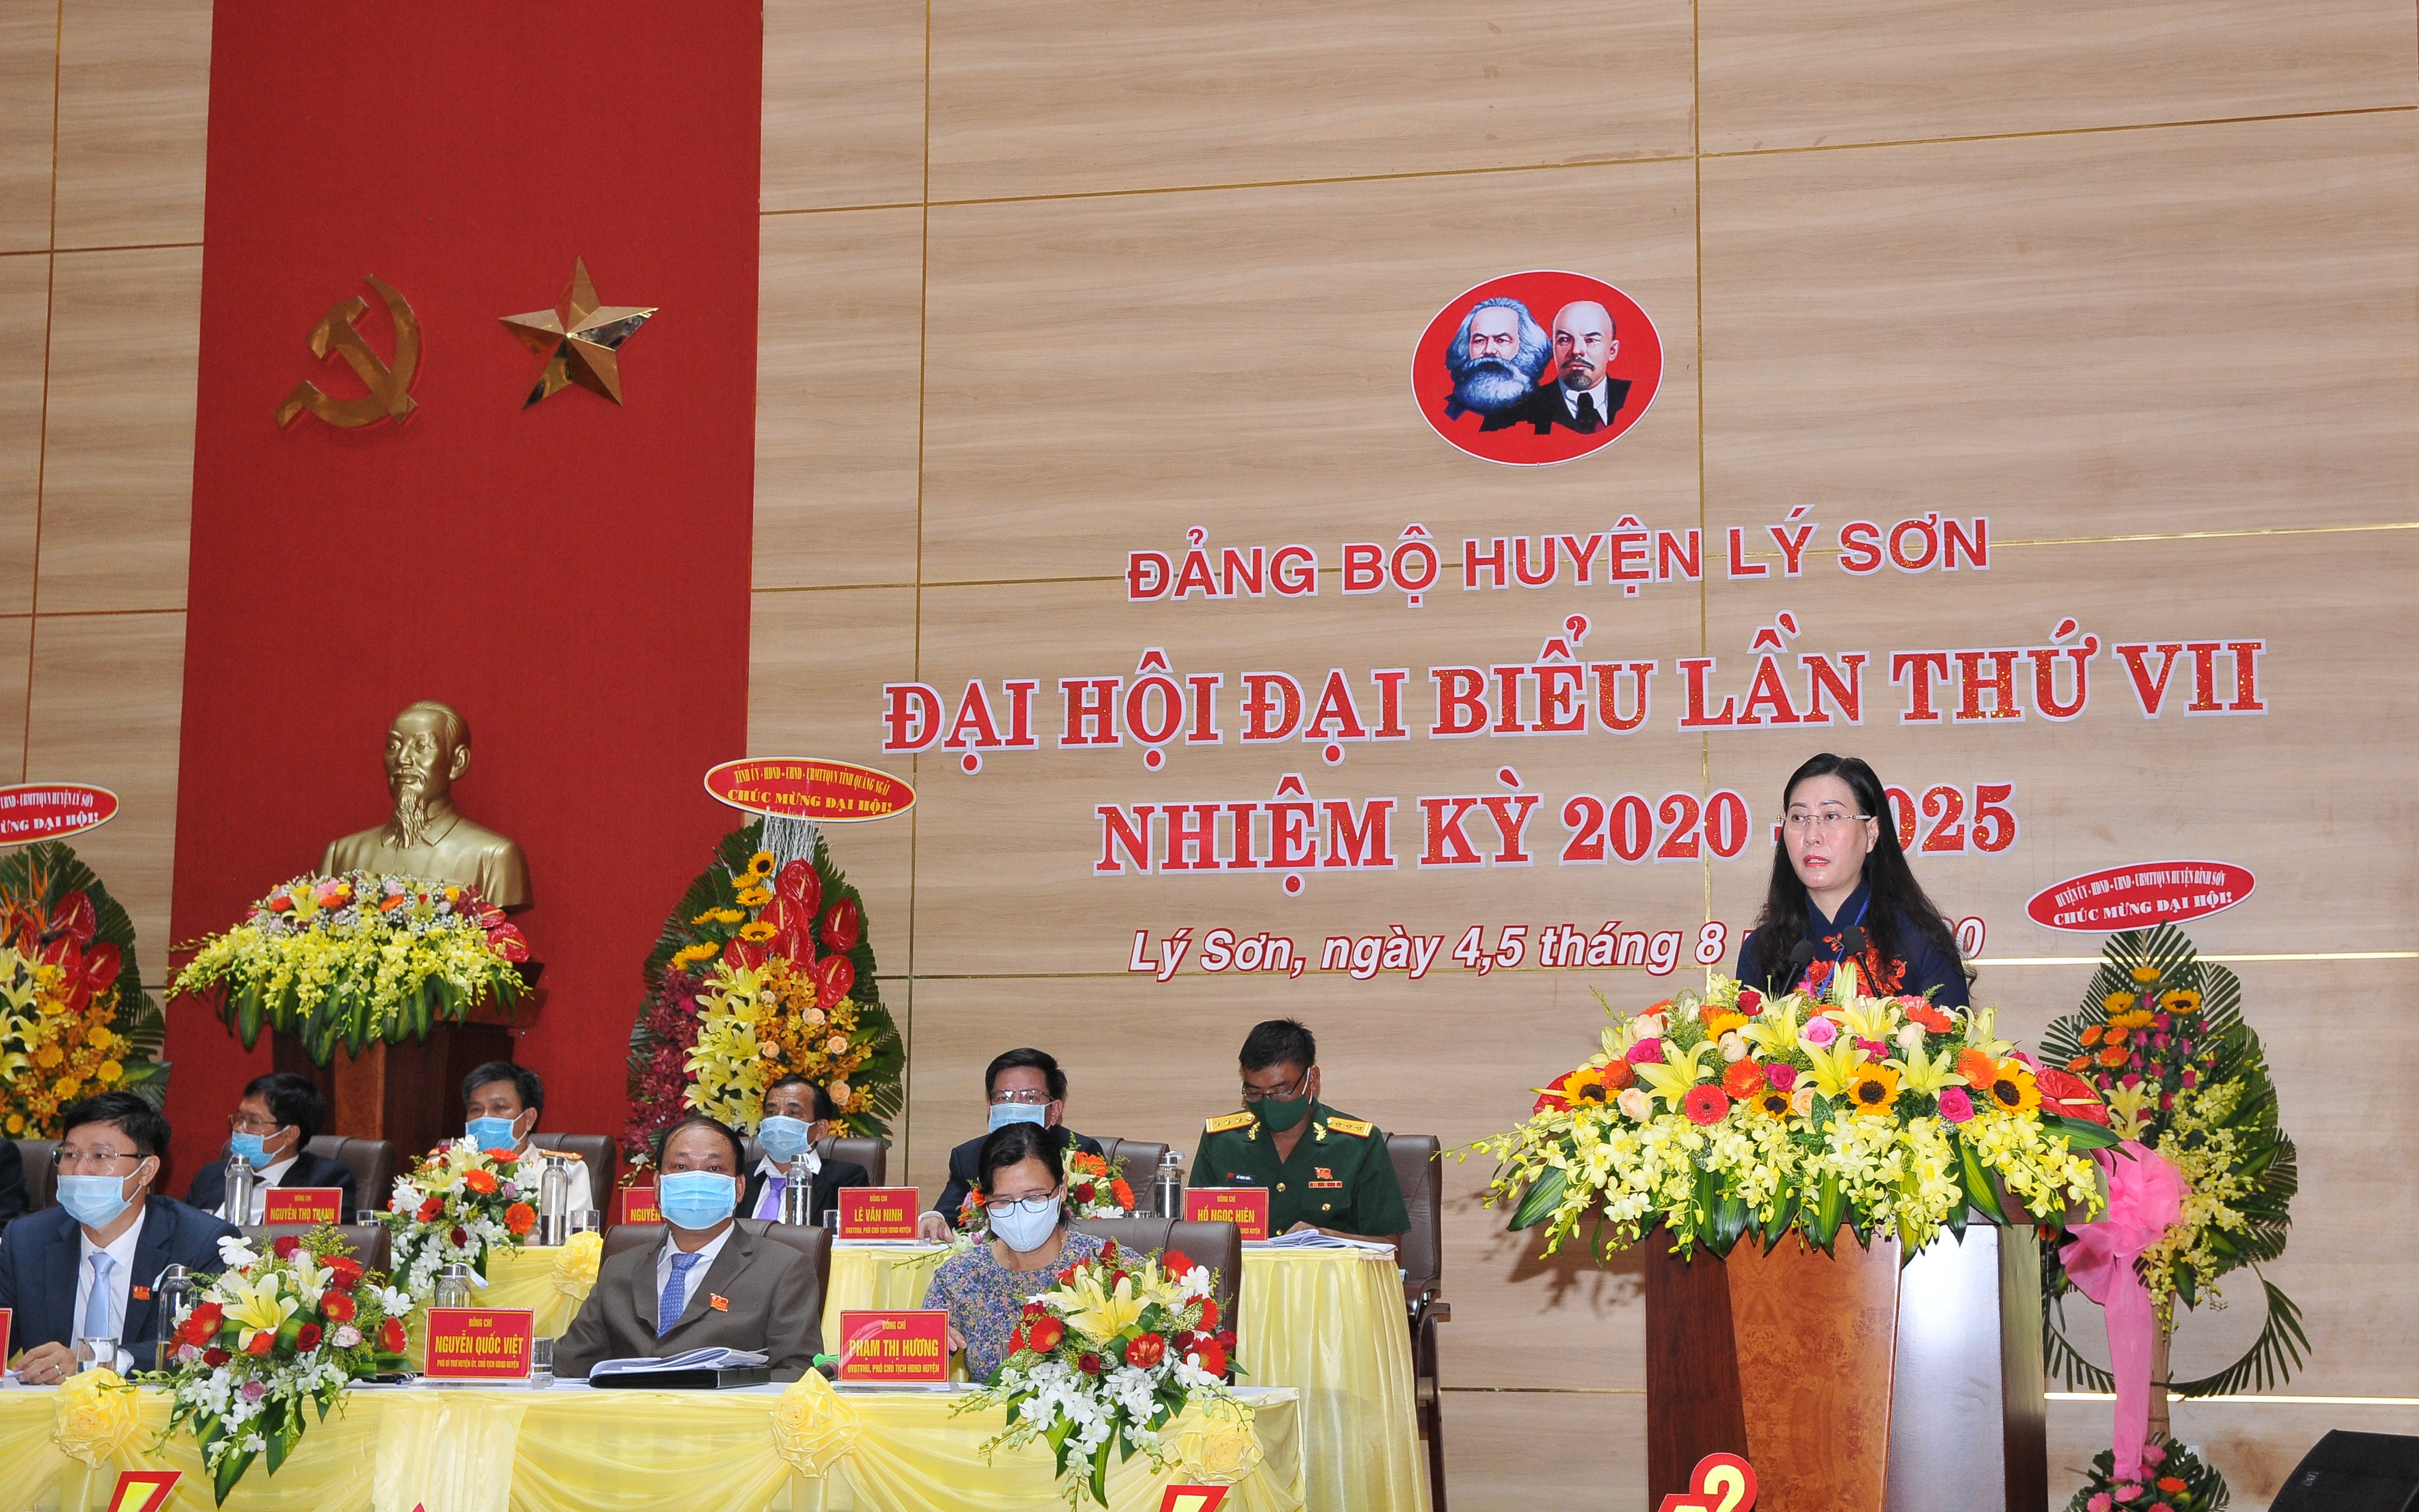 Tổng quan về định hướng phát triển kinh tế - xã hội huyện đảo Lý Sơn, tỉnh Quảng Ngãi giai đoạn 2020-2025